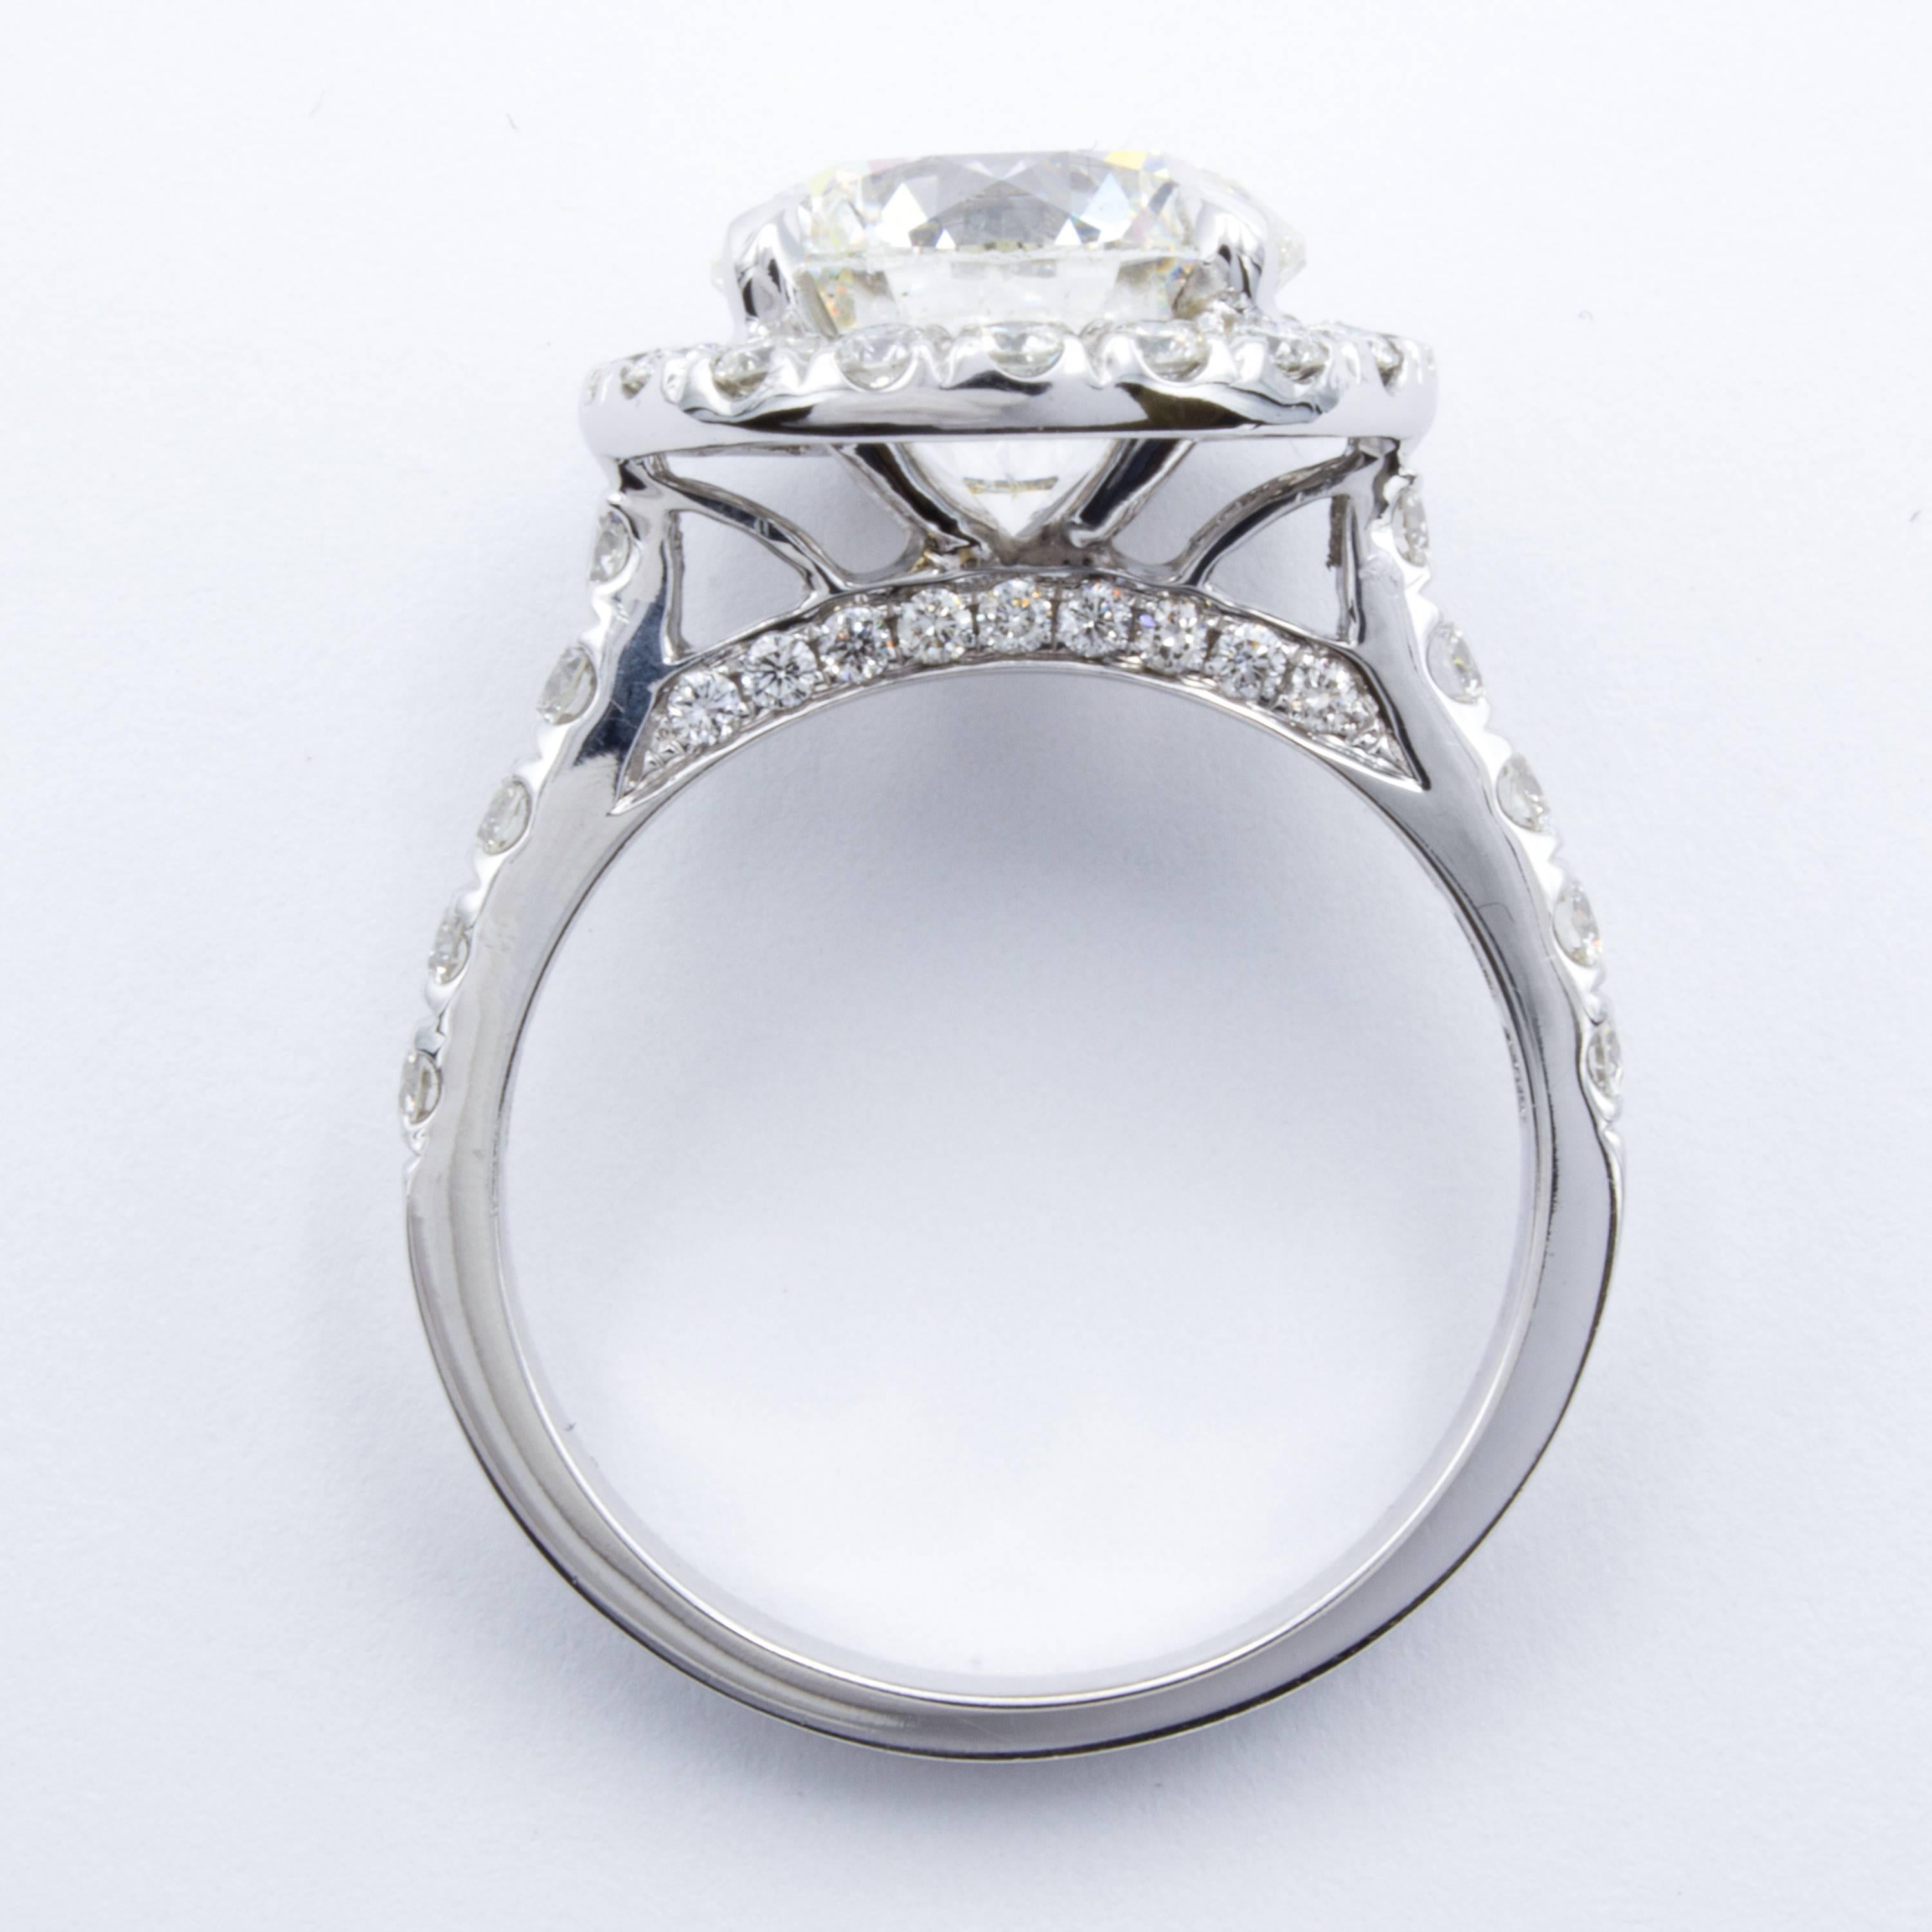 David Rosenberg 4 Carat Round H/SI2 GIA 18 Karat White Gold Diamond Ring 2